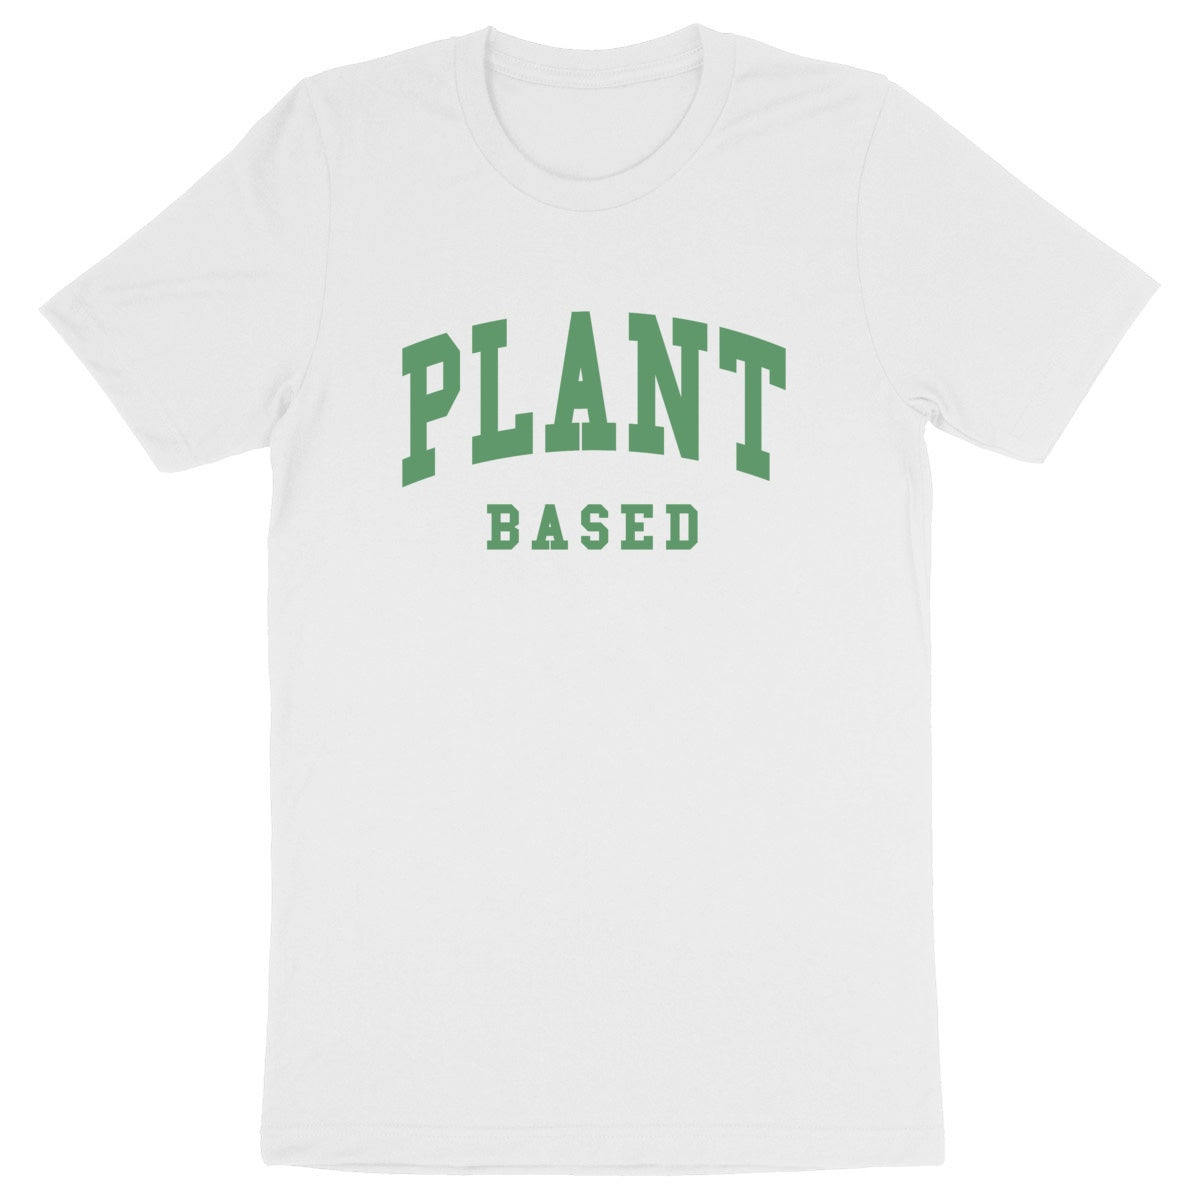 Plant Based - Unisex Organic T-shirt